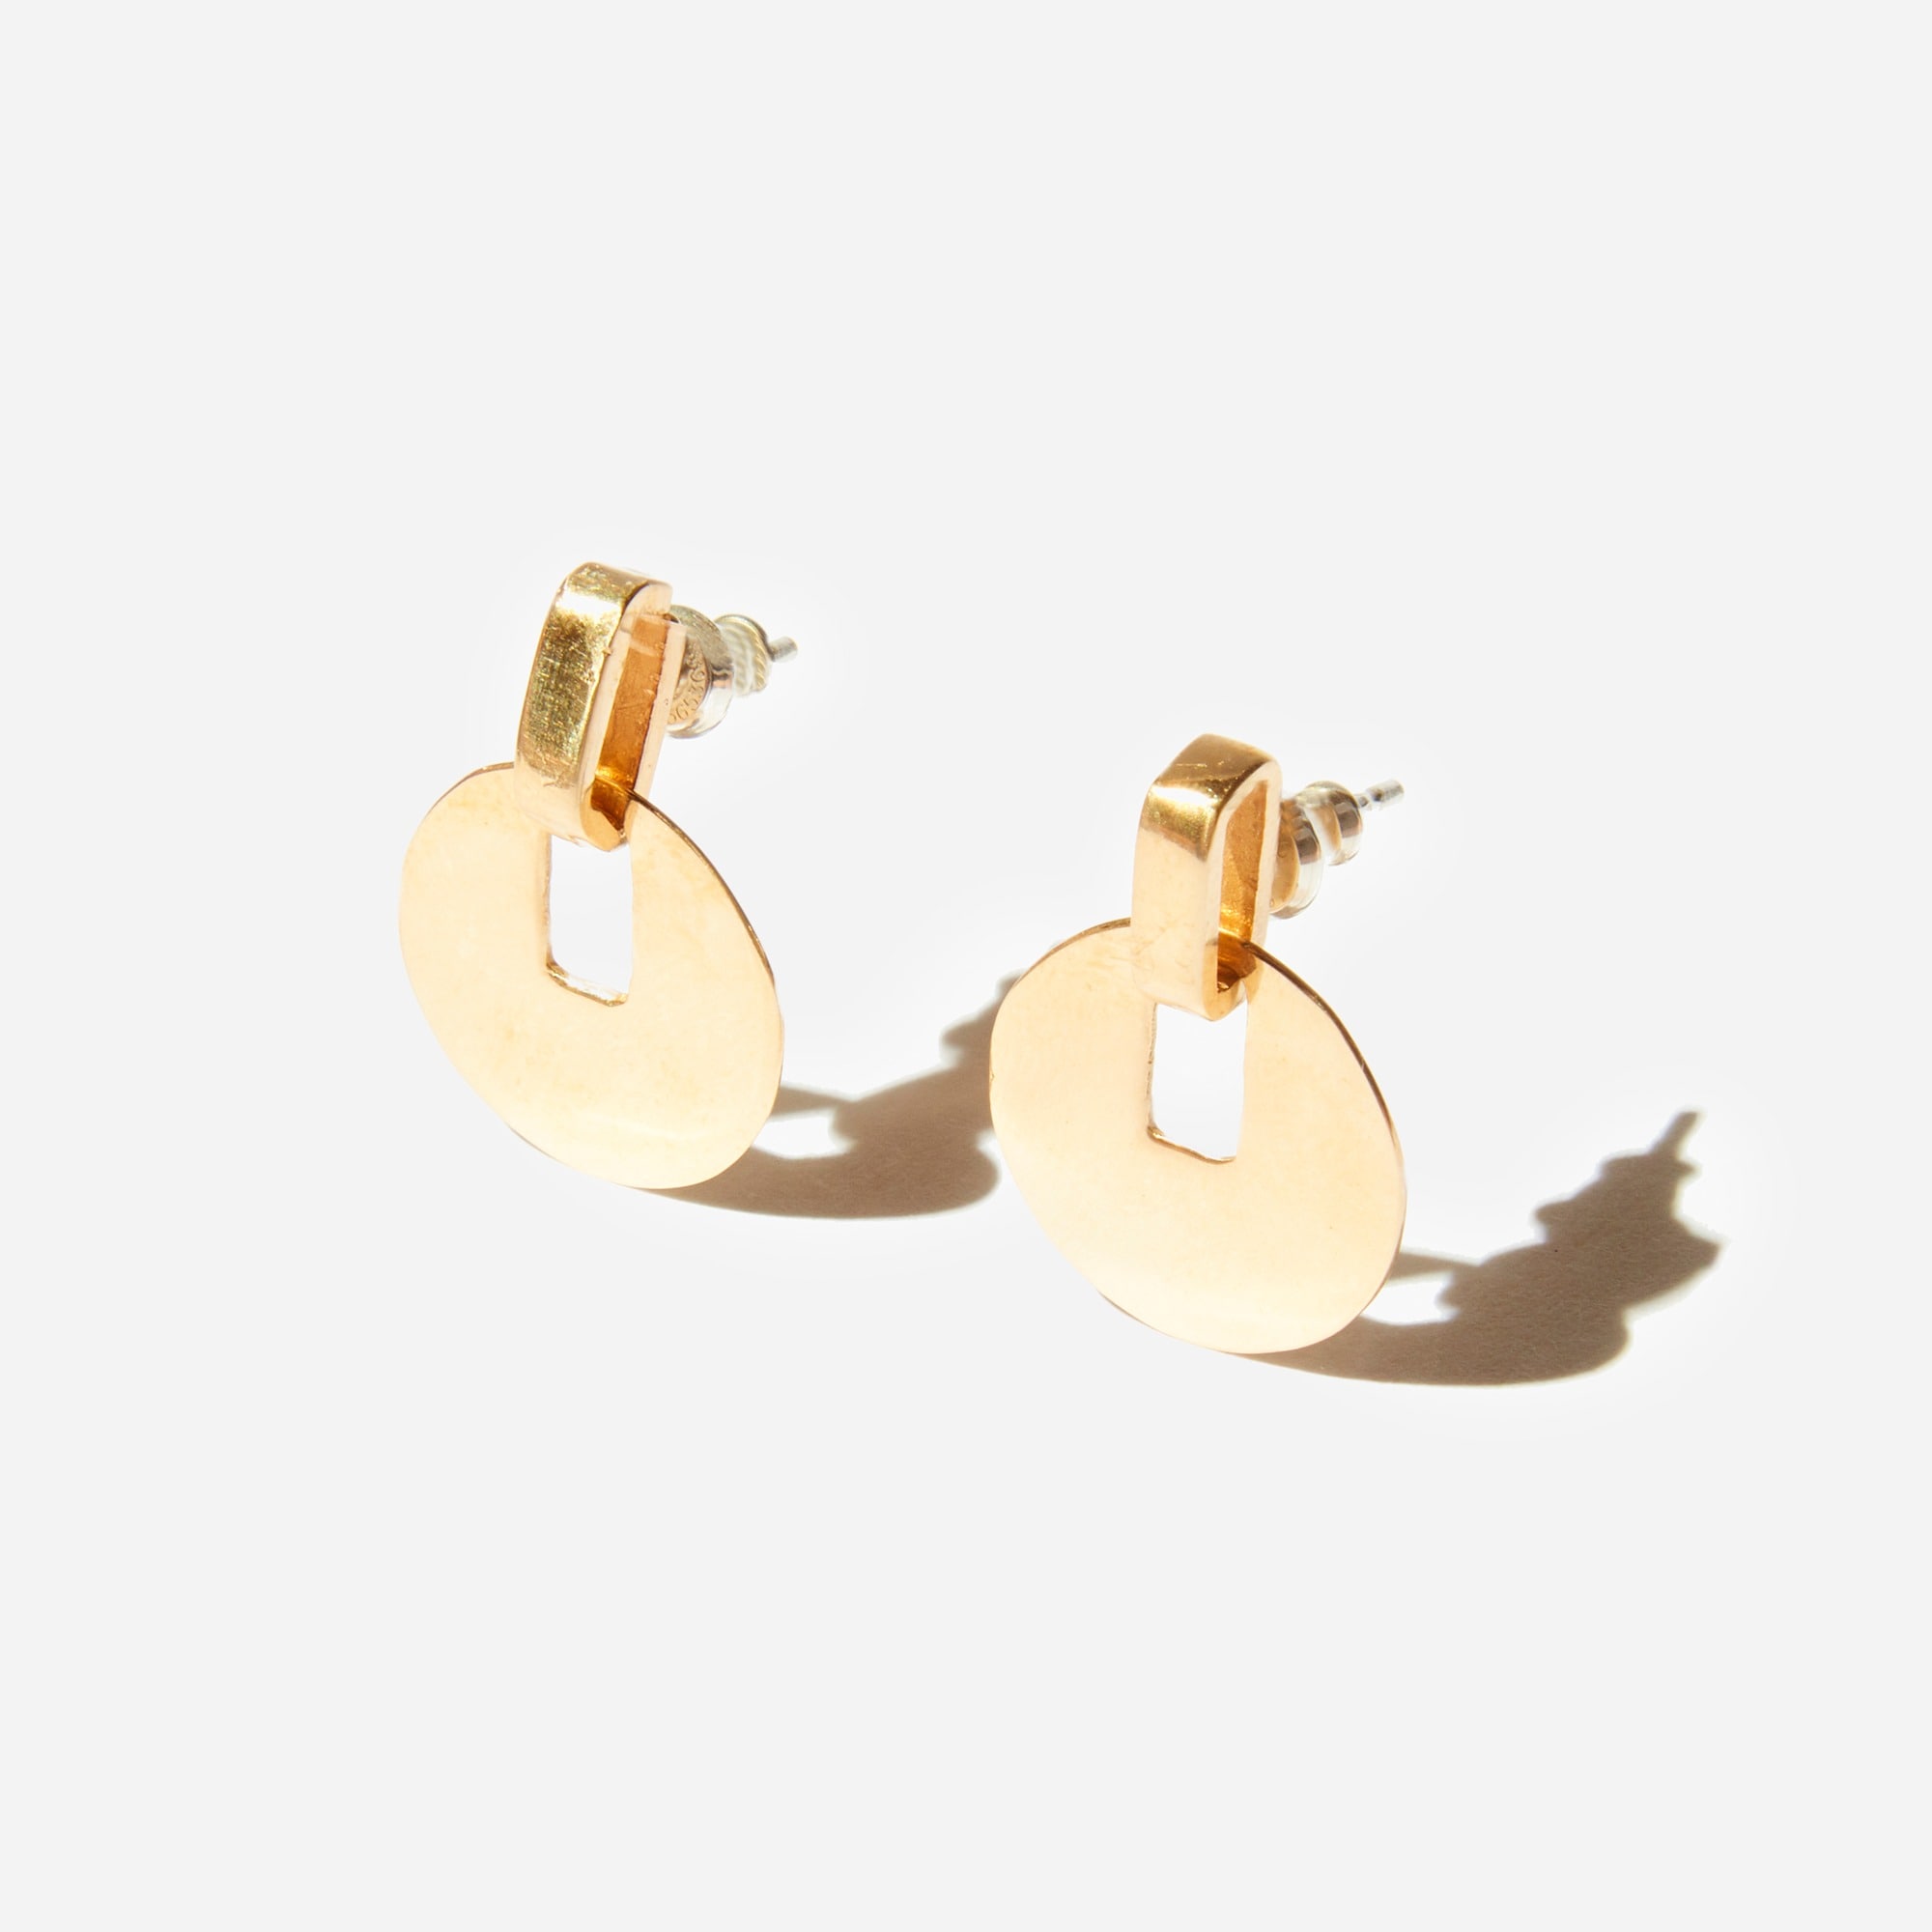 Jcrew Odette New York Paillette earrings